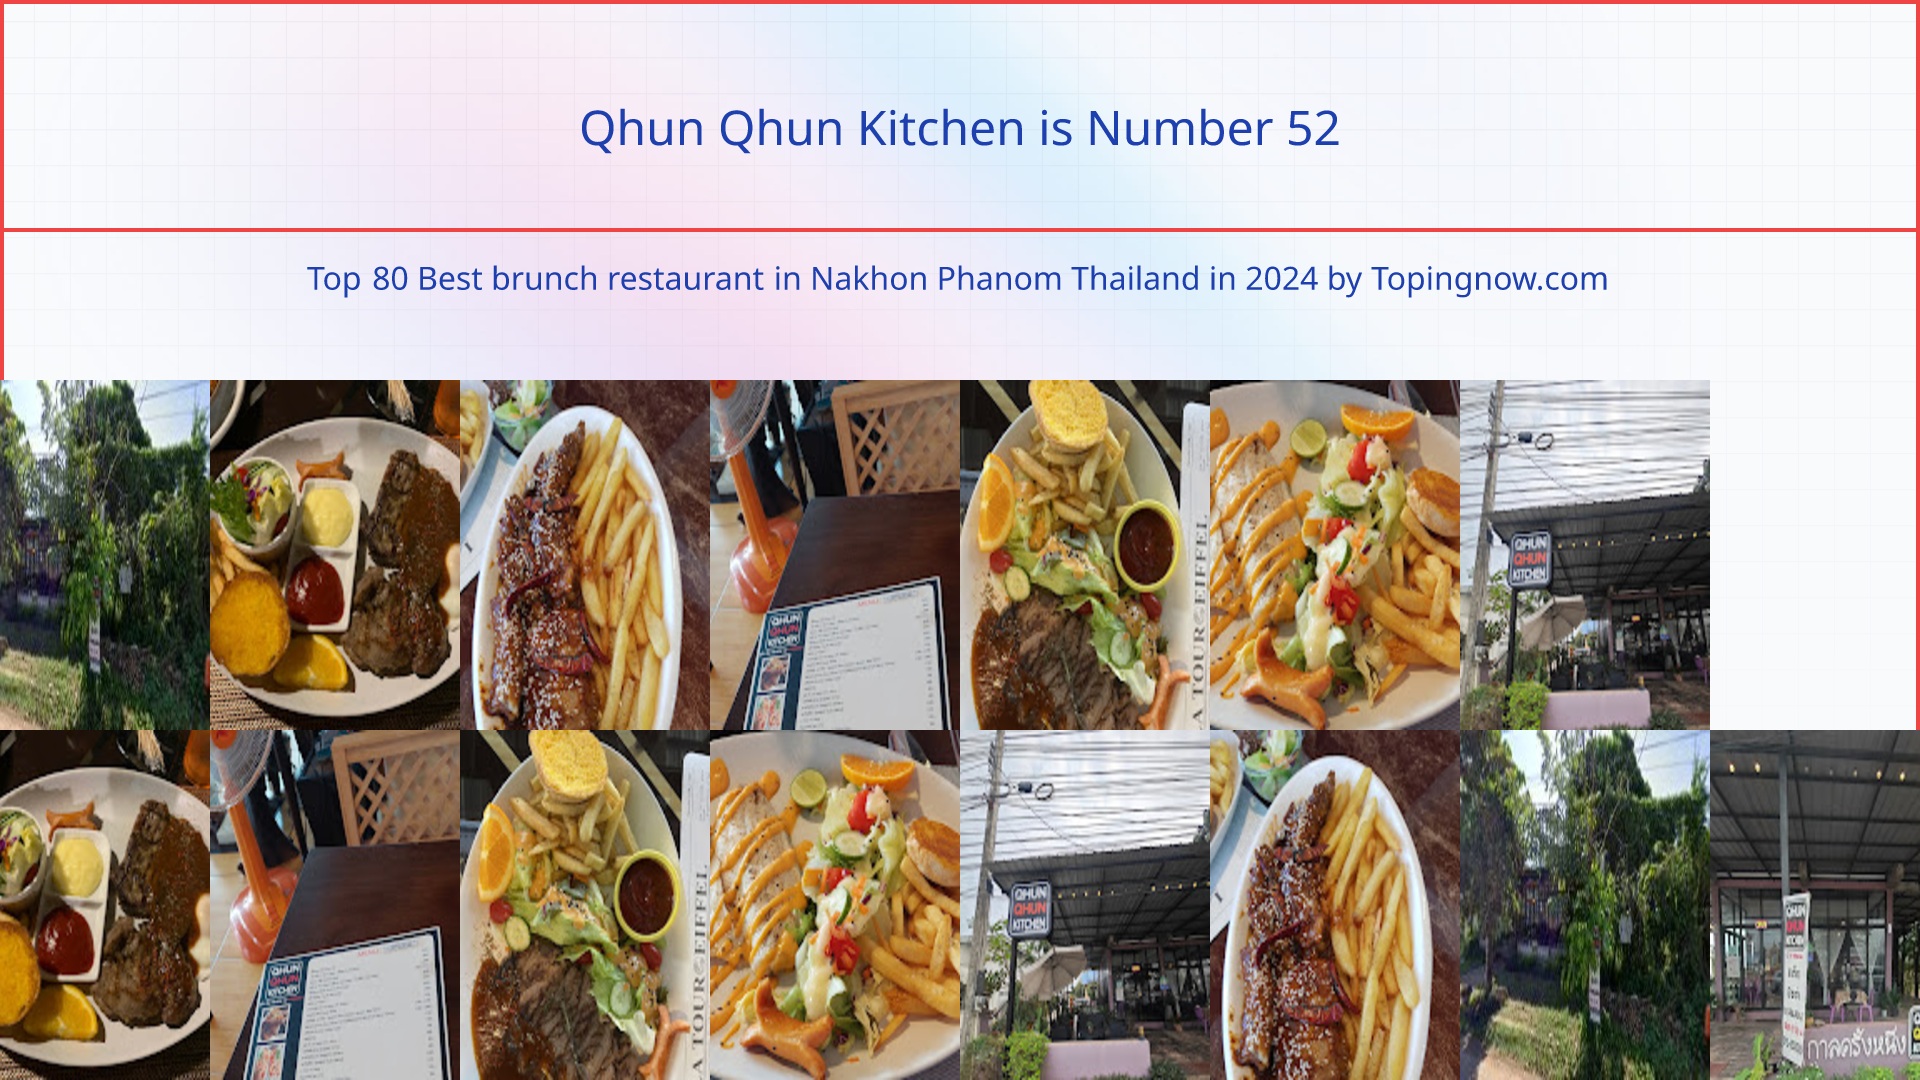 Qhun Qhun Kitchen: Top 80 Best brunch restaurant in Nakhon Phanom Thailand in 2024